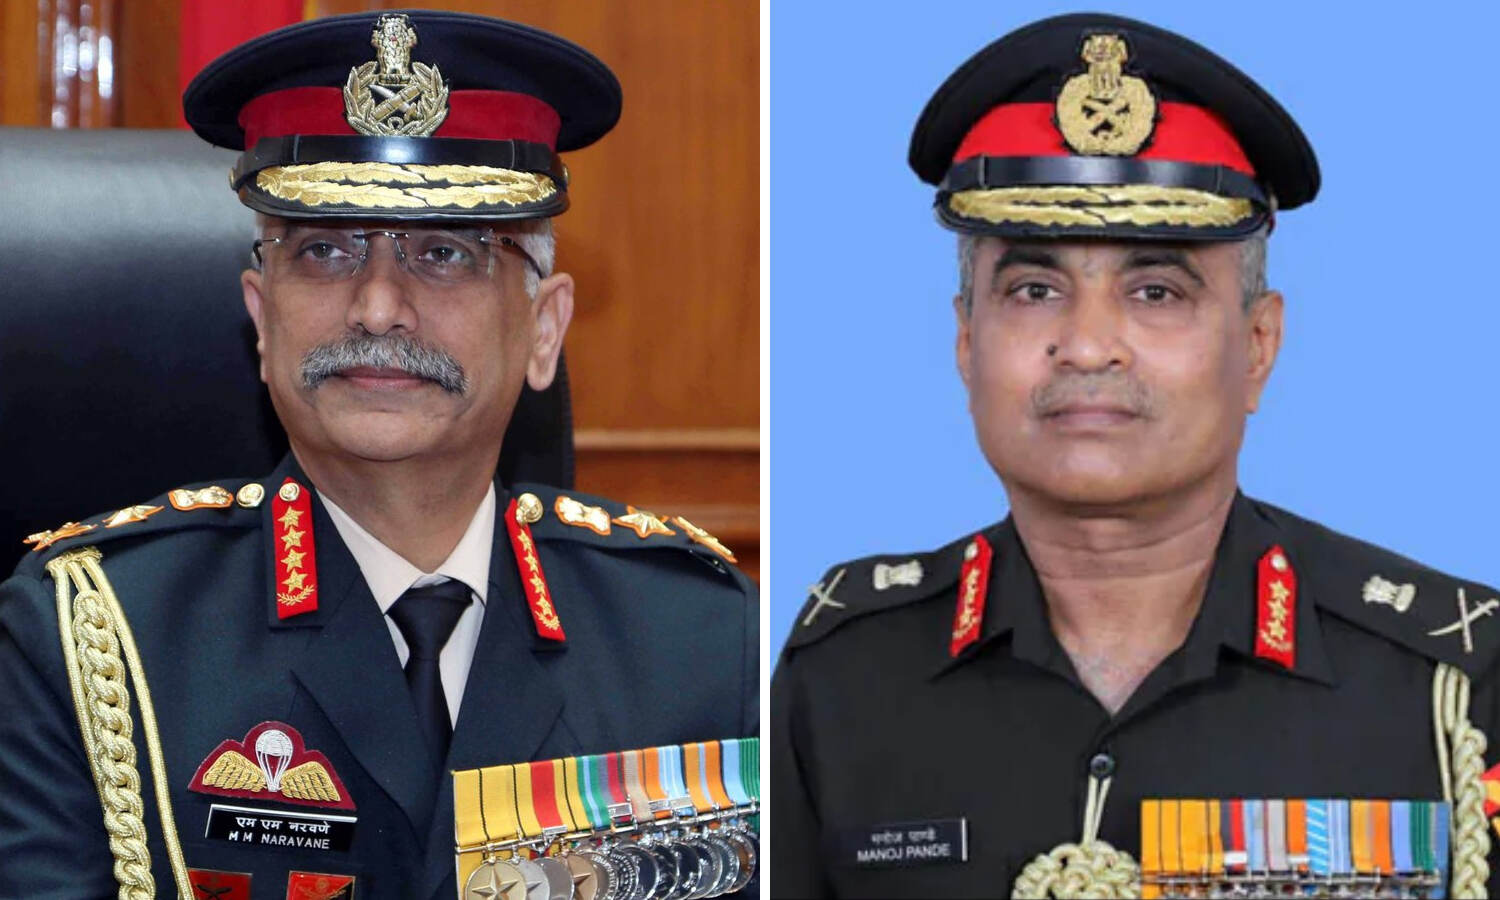 New Army Chief : लेफ्टिनेंट जनरल मनोज पांडे  होंगे नए सेना प्रमुख, जनरल मनोज मुकुंद नरवणे की जगह लेंगे, जानिए उनके बारे में